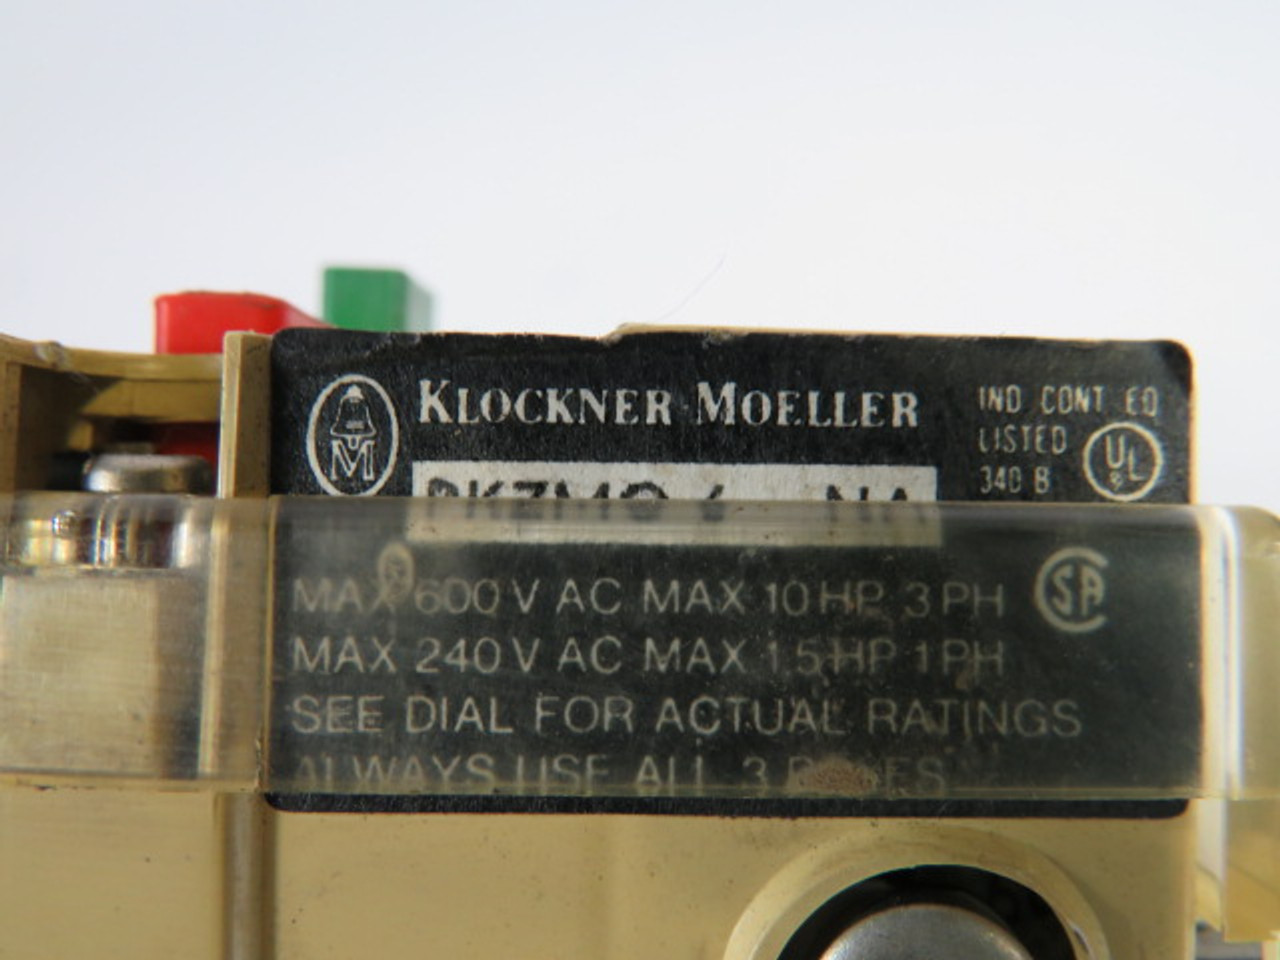 Klockner-Moeller PKZMO-6-NA Starter 4-6A 600VAC 10HP 3PH USED